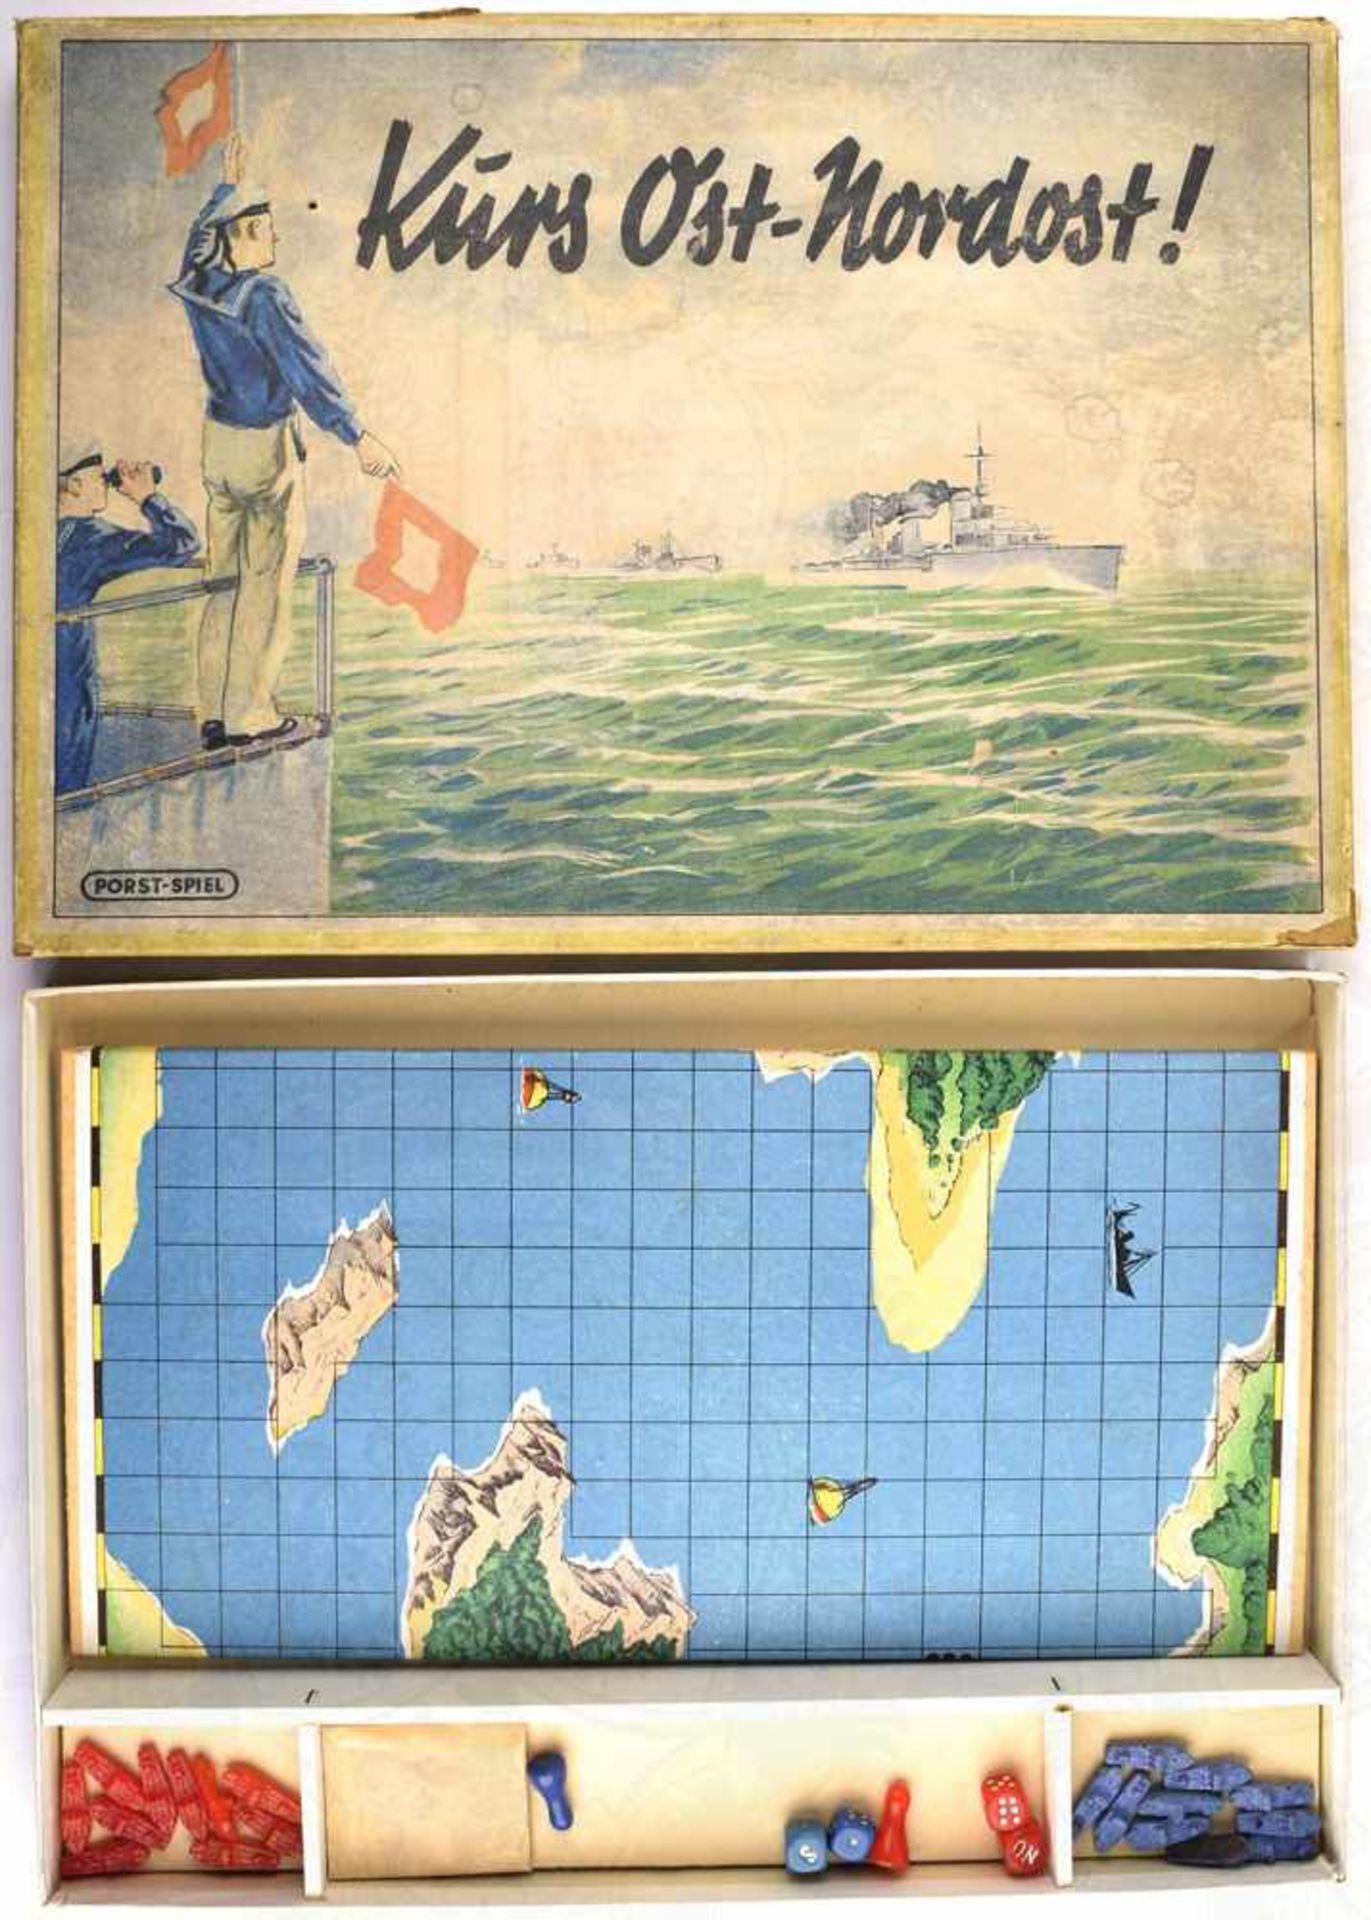 BRETTSPIEL - KURS OST-NORDOST, Porst-Spiel, um 1939, klappbares Spielbrett, farb. bedruckt, mit